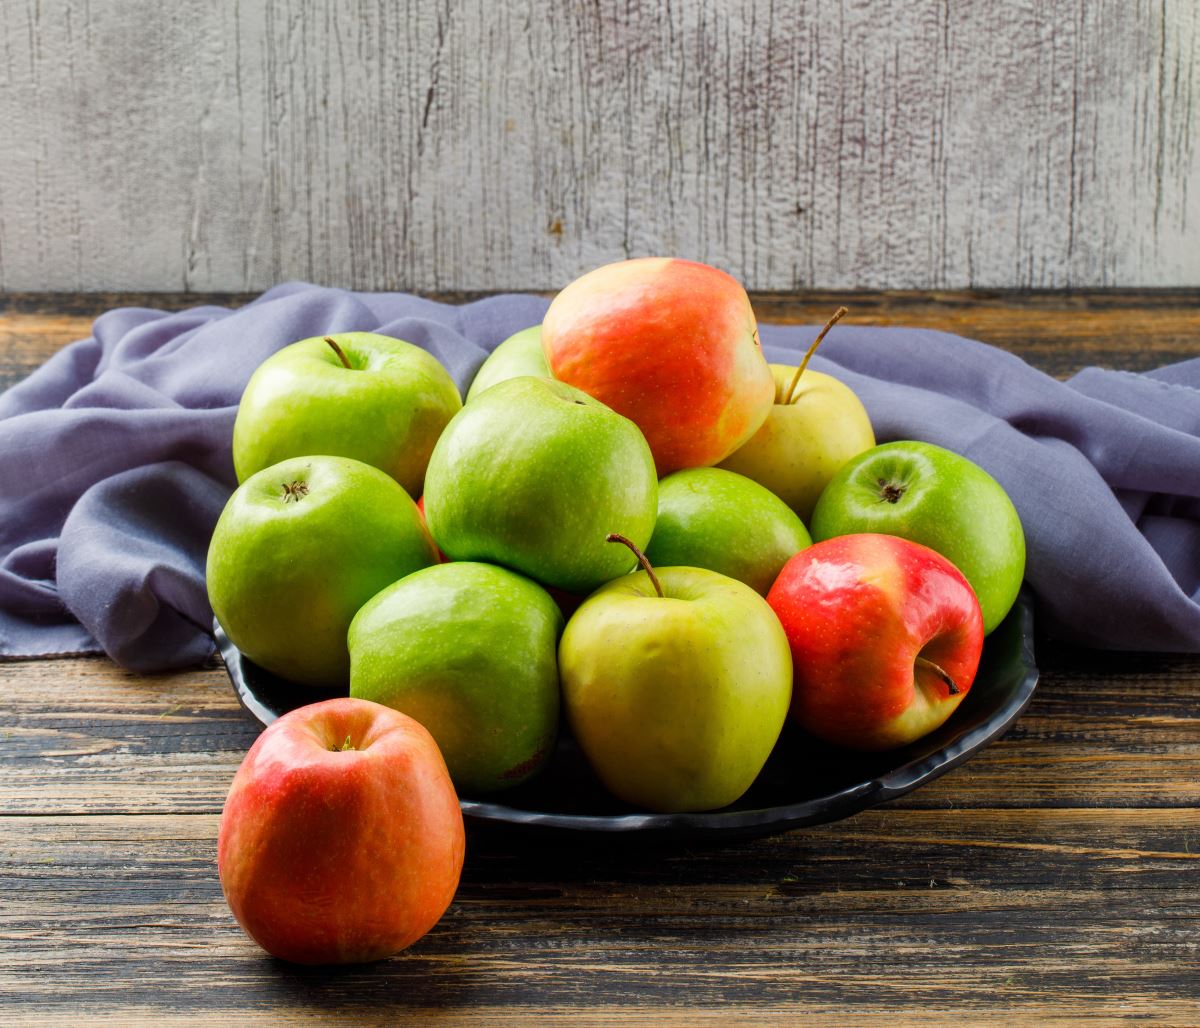 Apa Efek Samping Mengkonsumsi Buah Apel Berlebih? Inilah 7 Dampak Buruk Makan Apel Berlebih dan Perut Kosong!